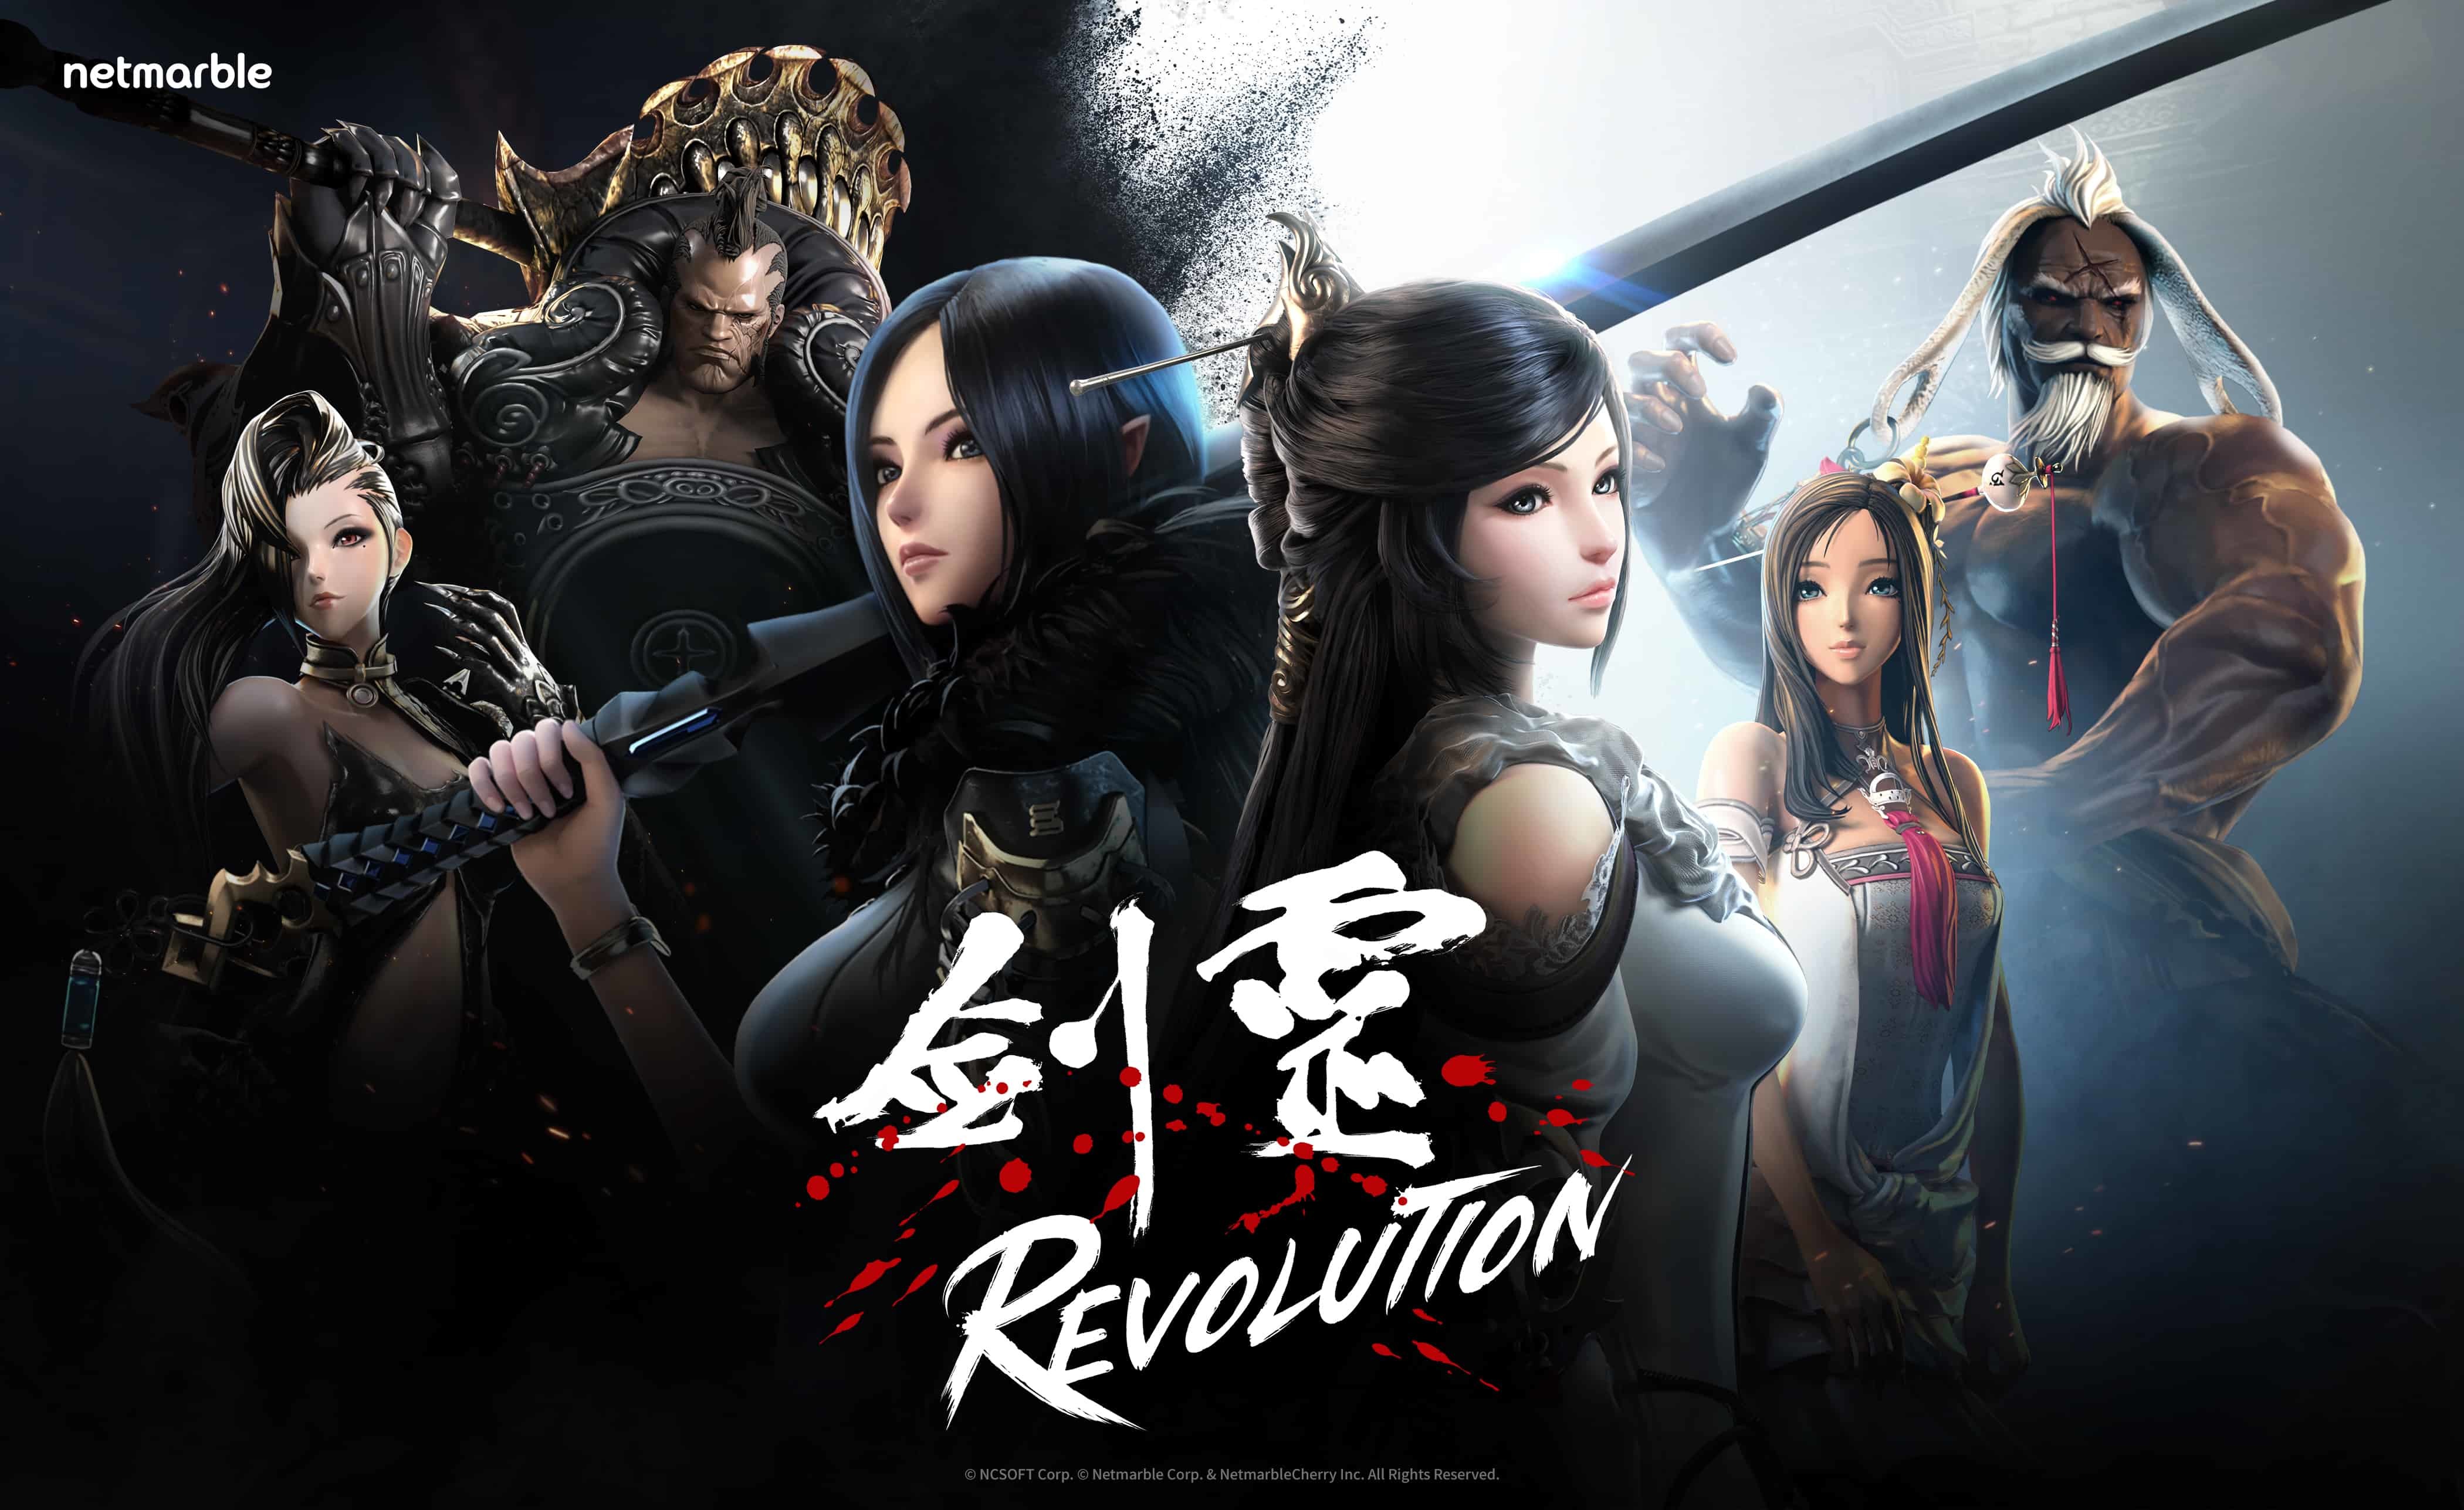 《剑灵:革命》将於 3 月 24 日展开事前预约 抢先曝光